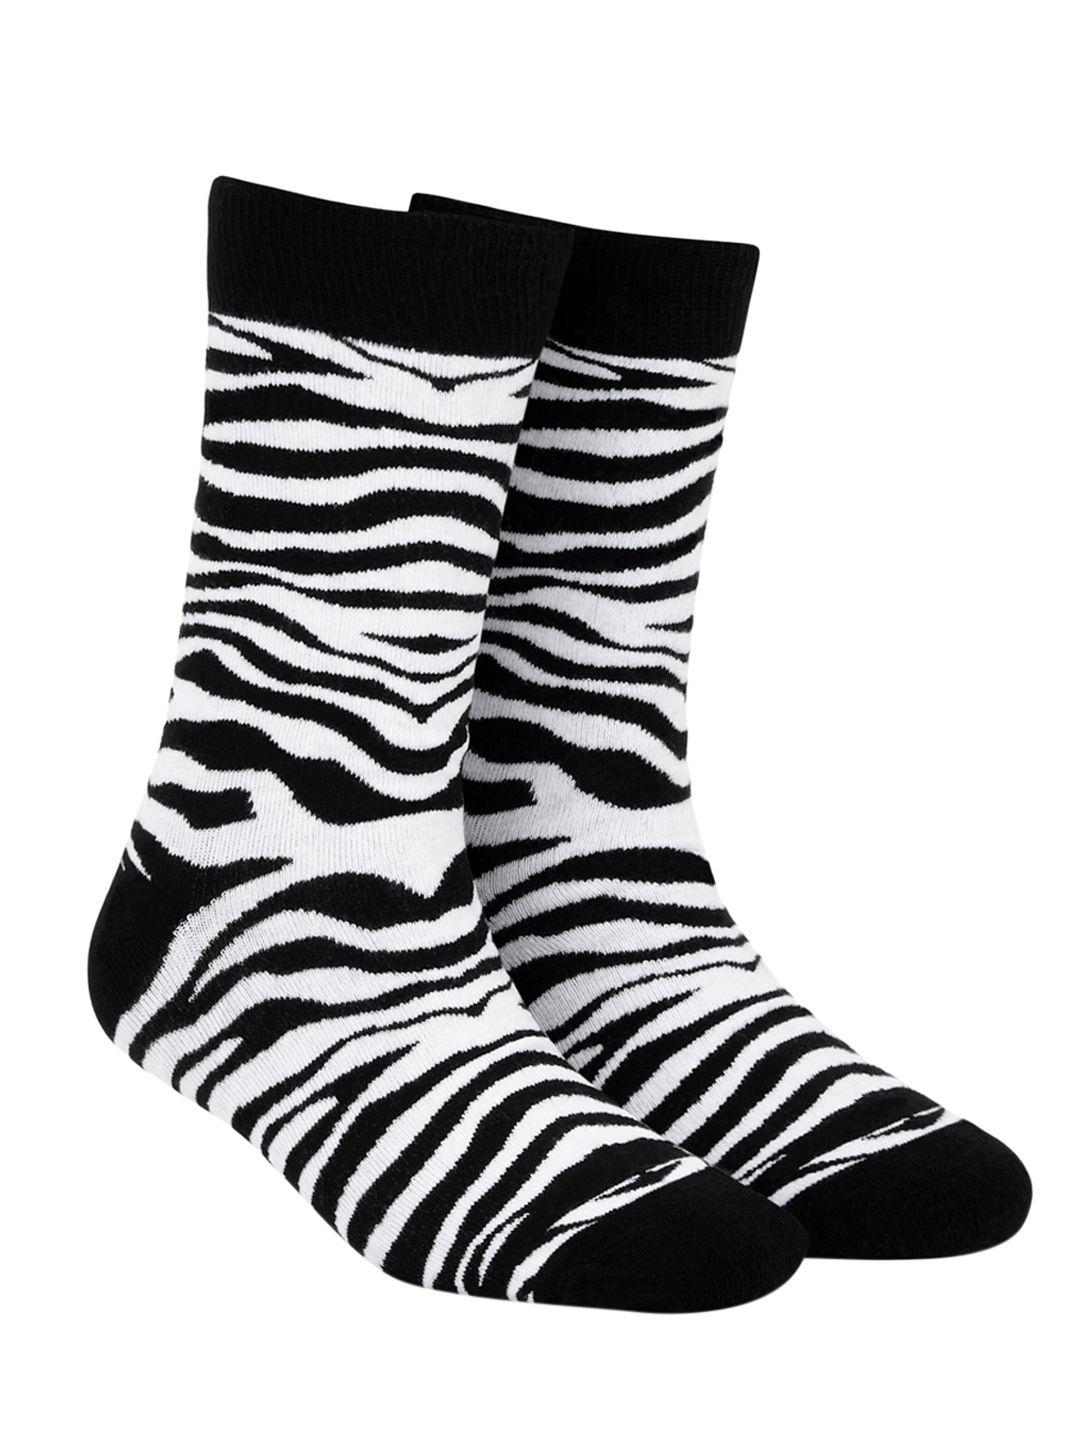 dynamocks unisex white & black patterned calf-length socks